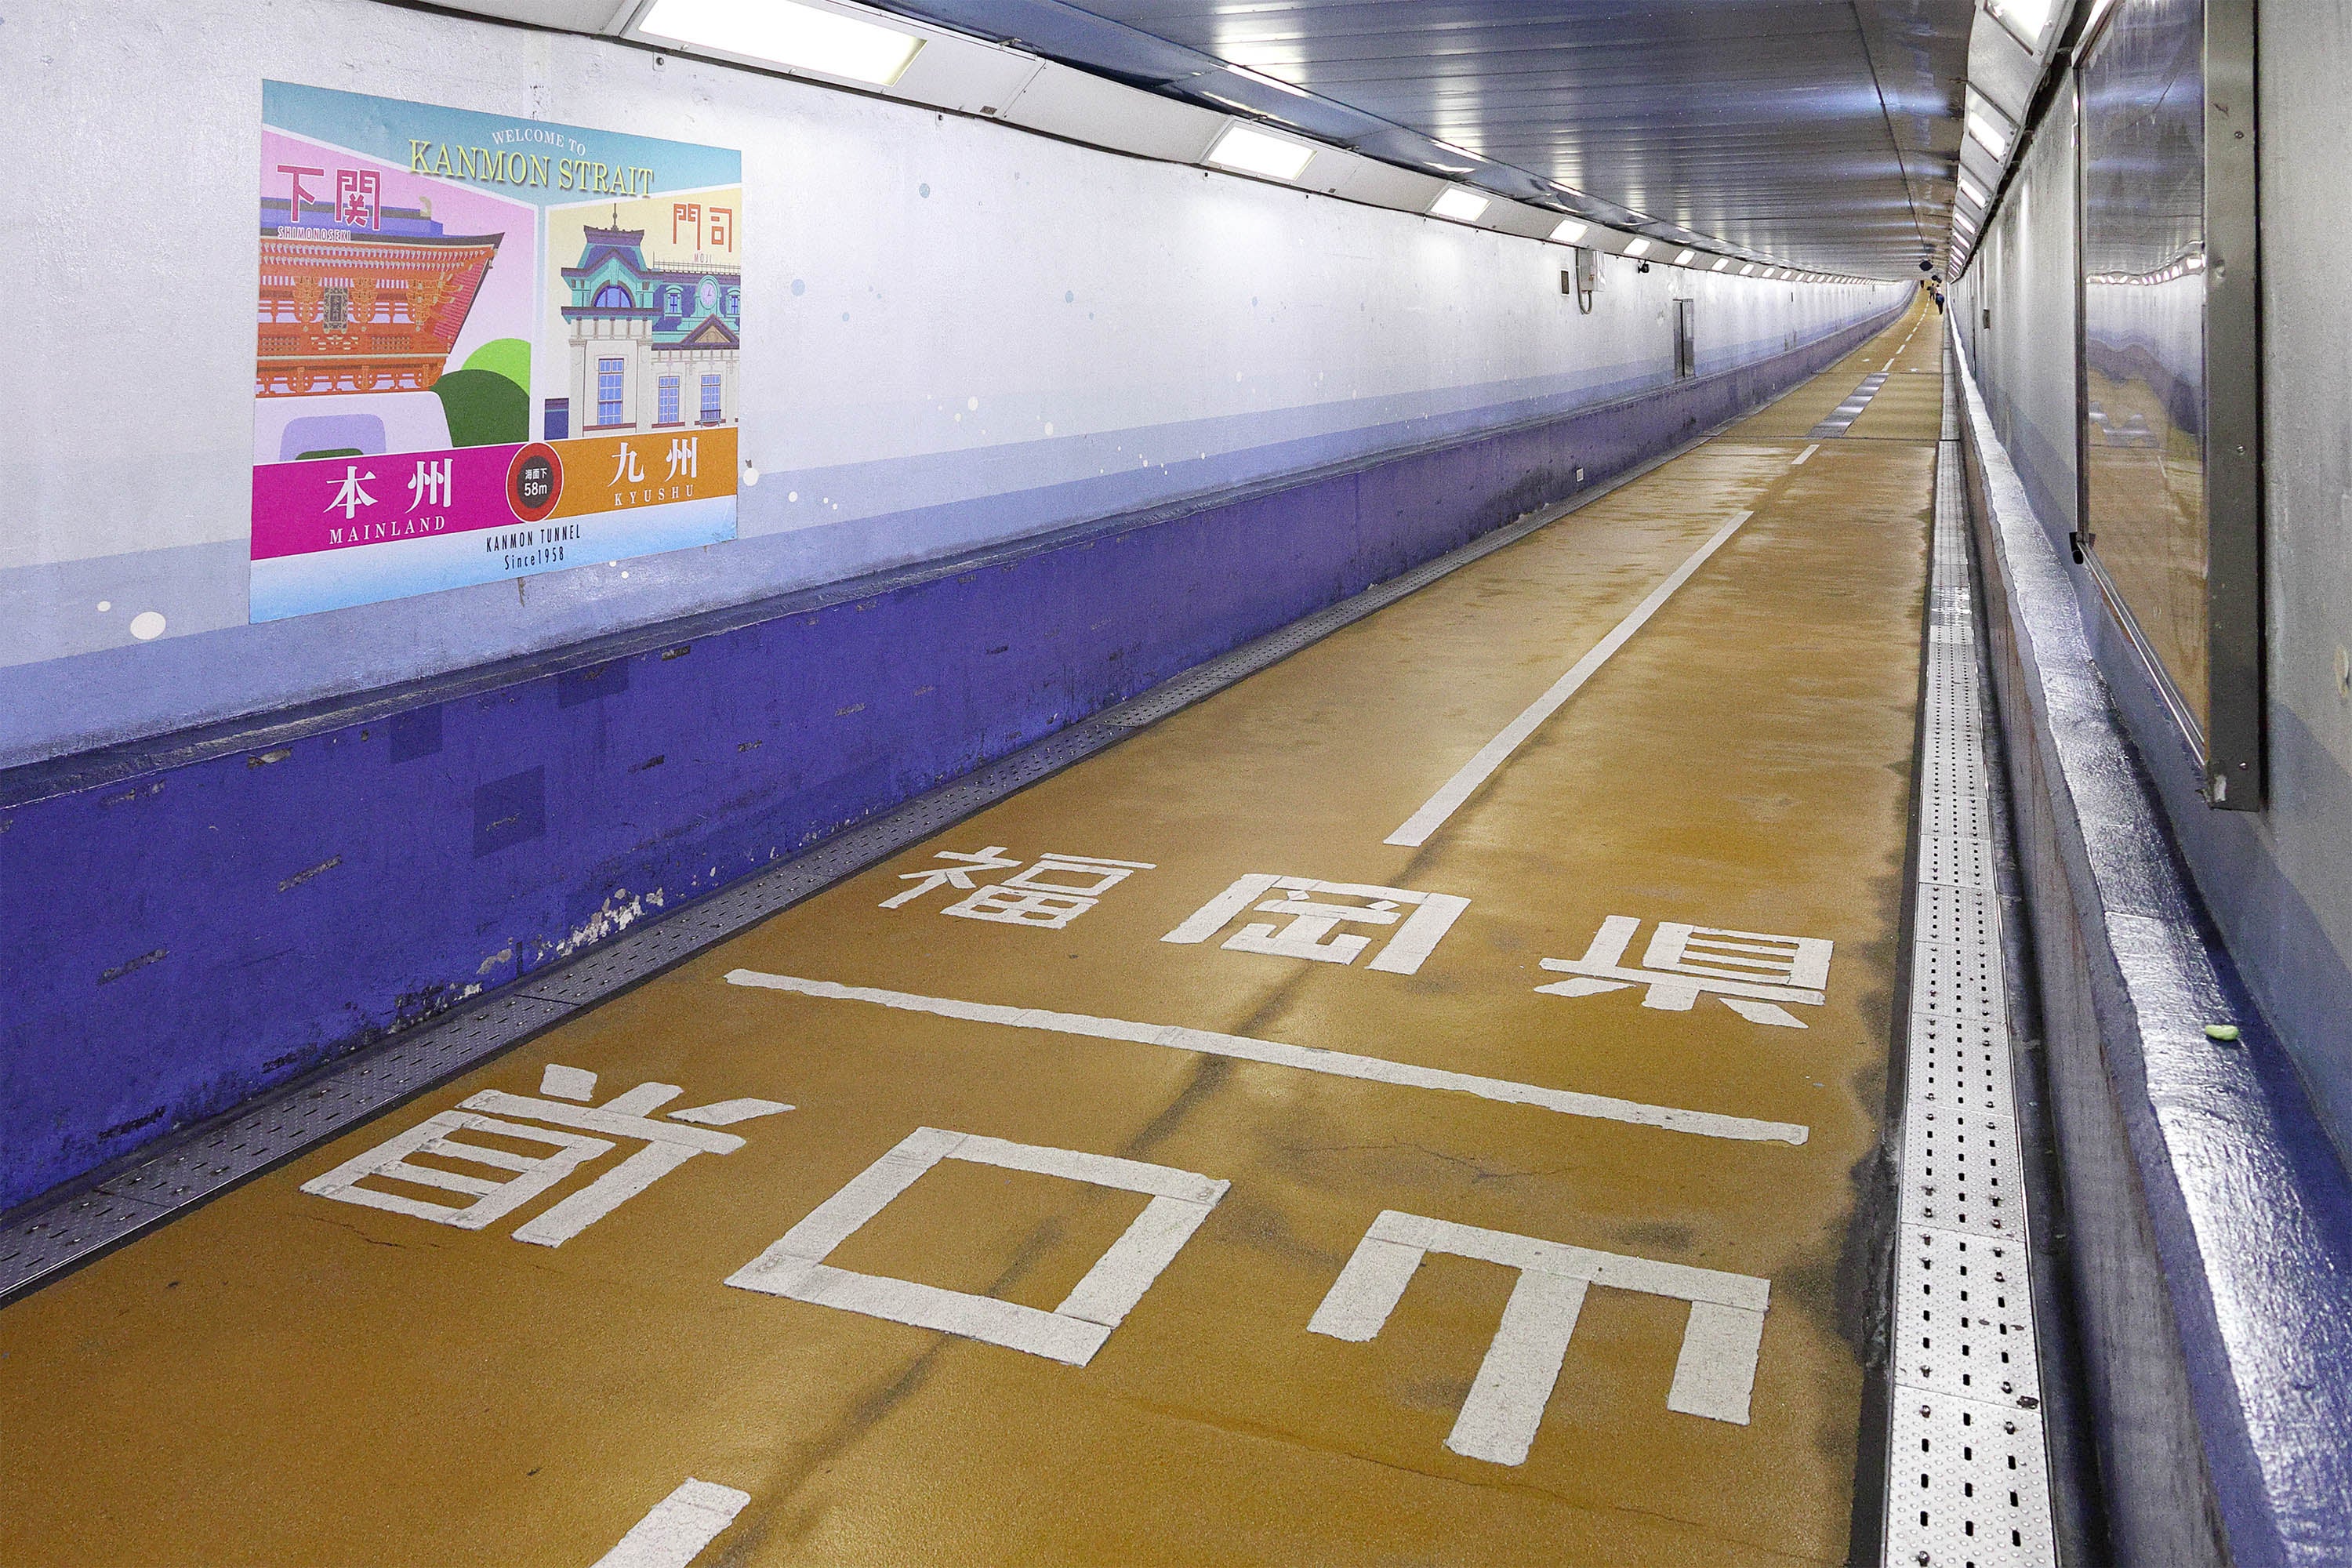 関門トンネル人道のほぼ中間地点にある、山口県と福岡県の県境